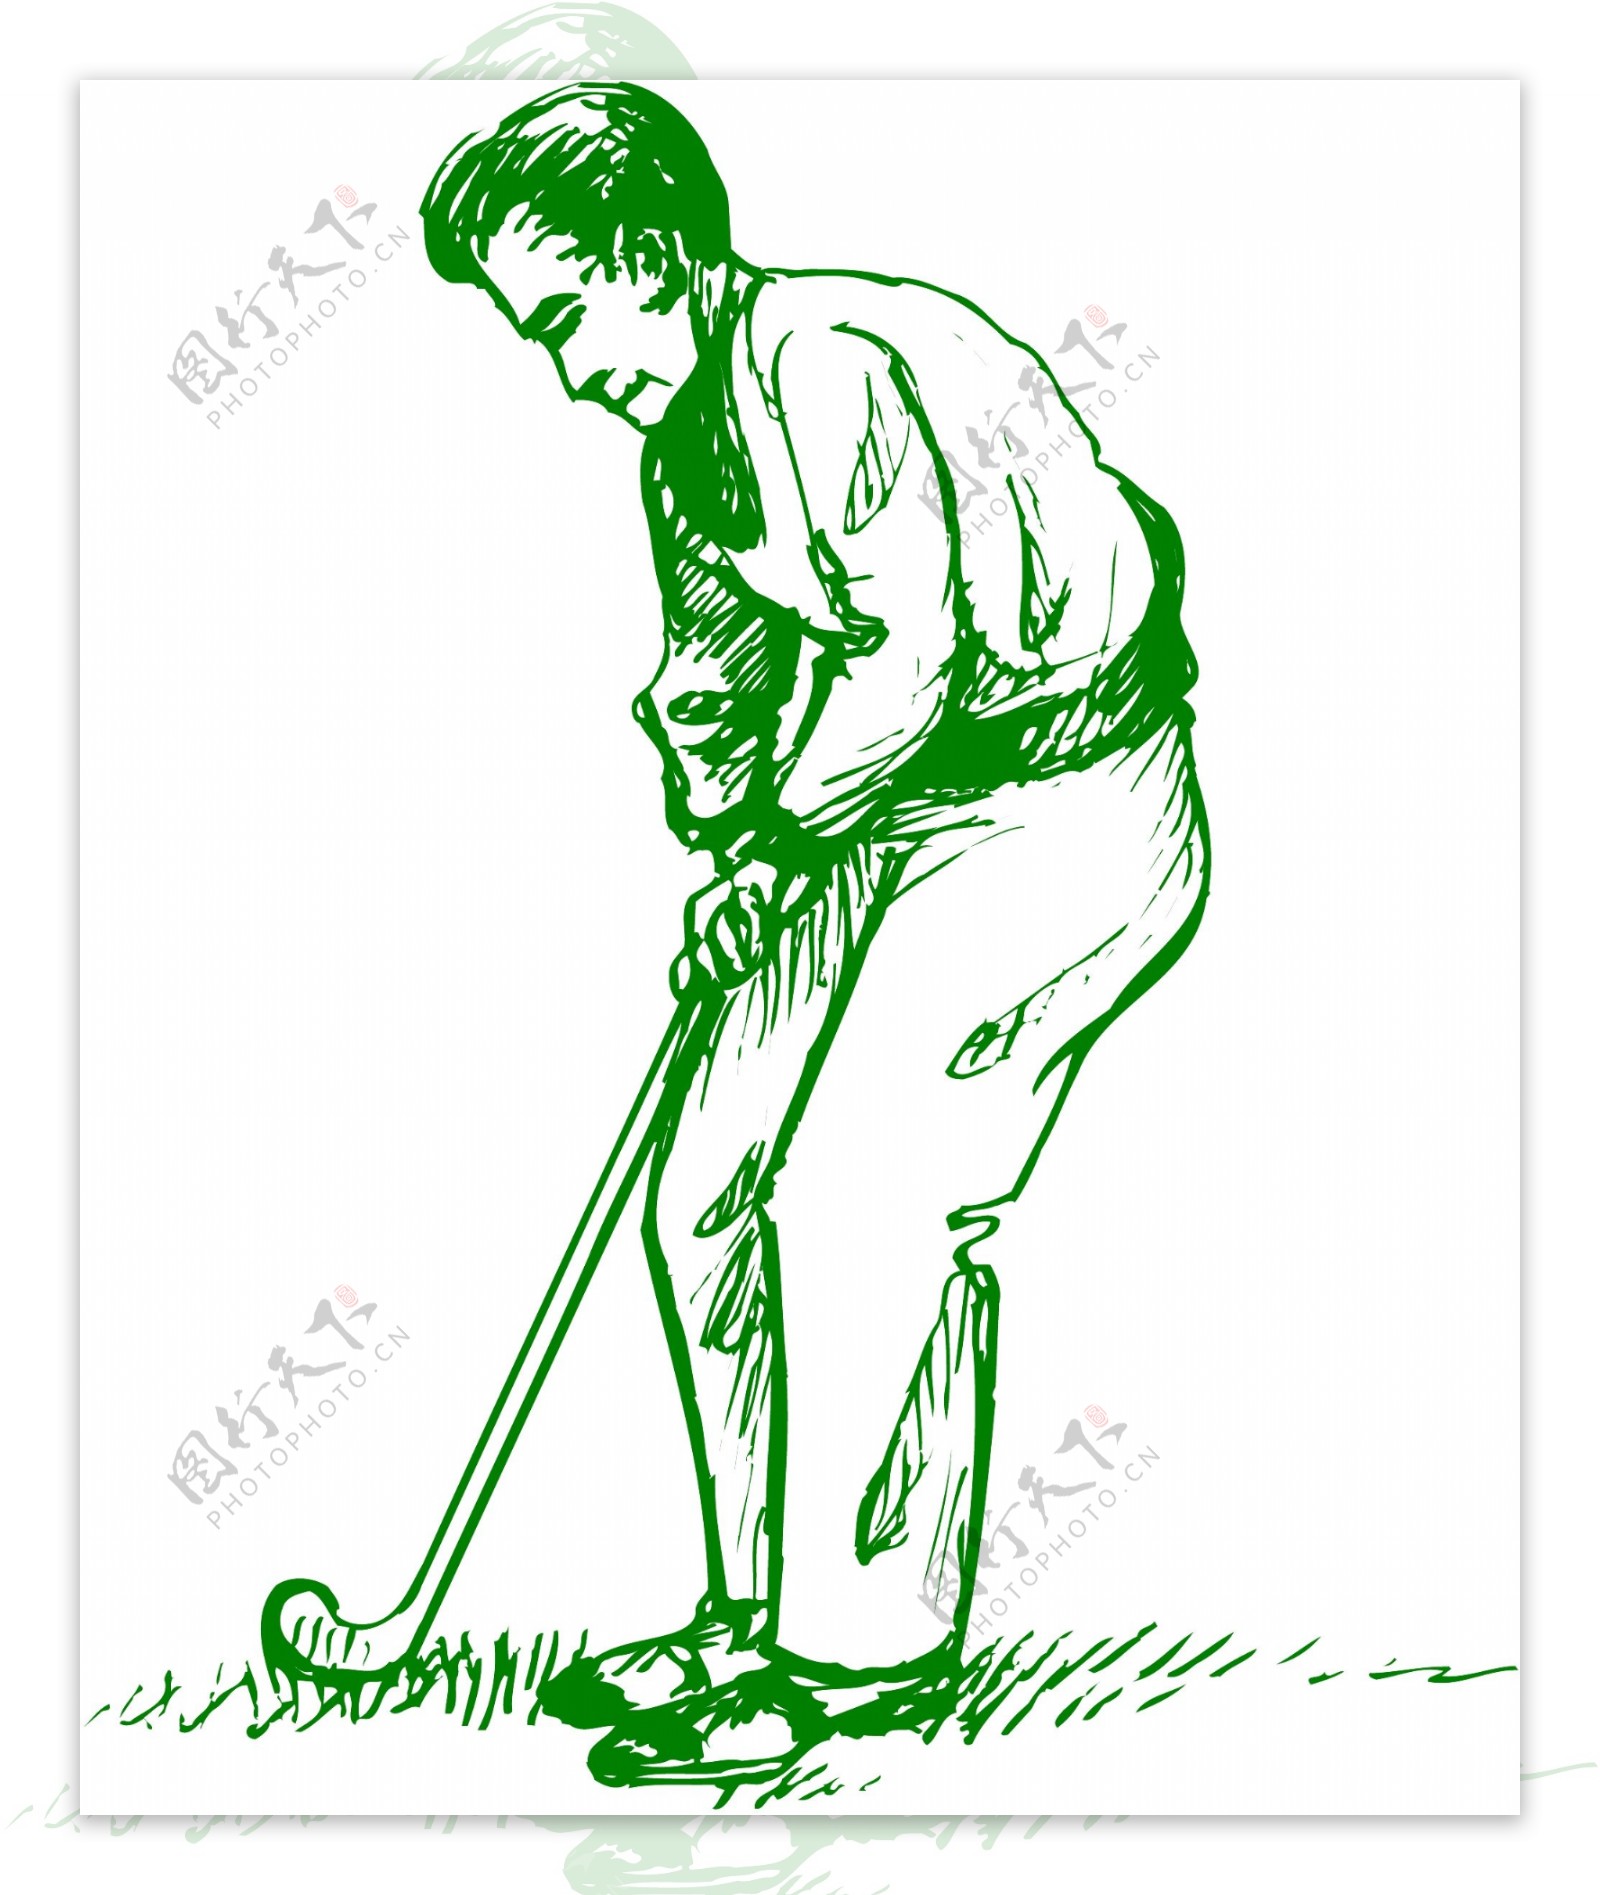 高尔夫球运动体育休闲矢量素材EPS格式0058